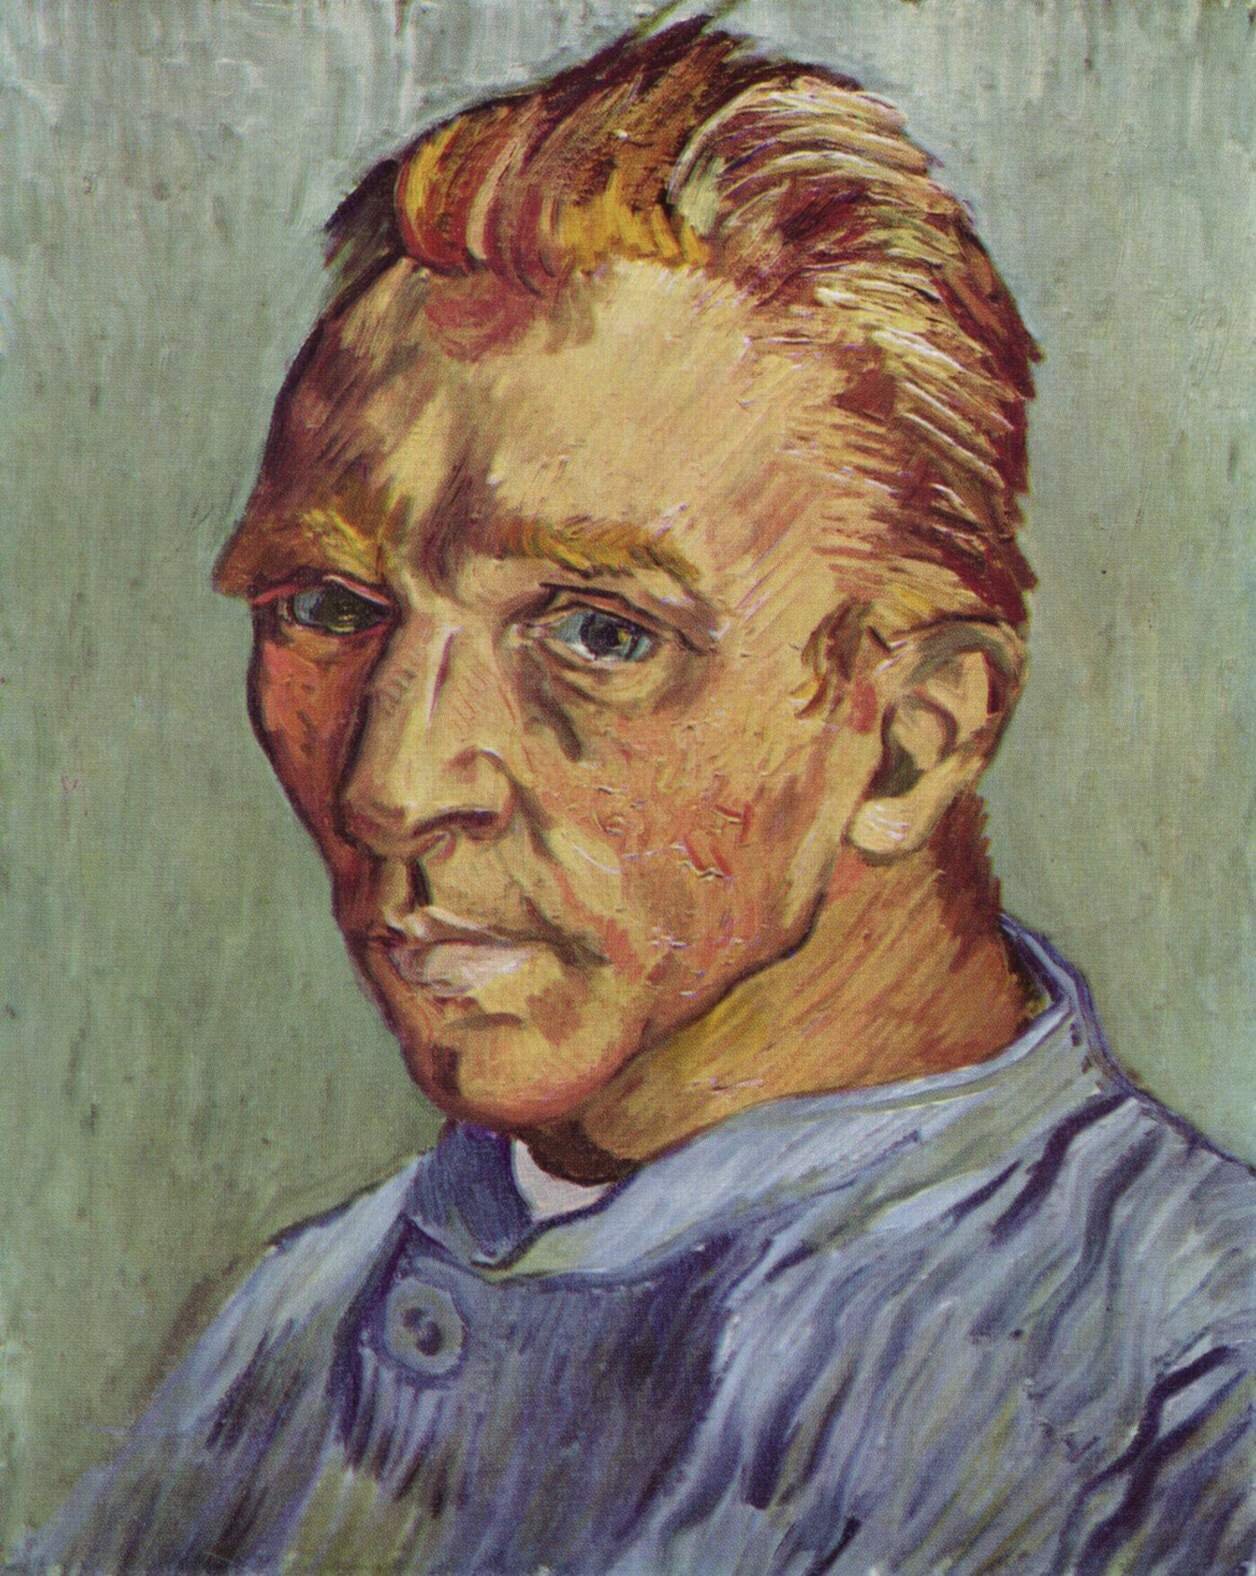 Autoportret bez brody Źródło: Vincent van Gogh, Autoportret bez brody, 1889, olej na płótnie, zbory prywatne, domena publiczna.